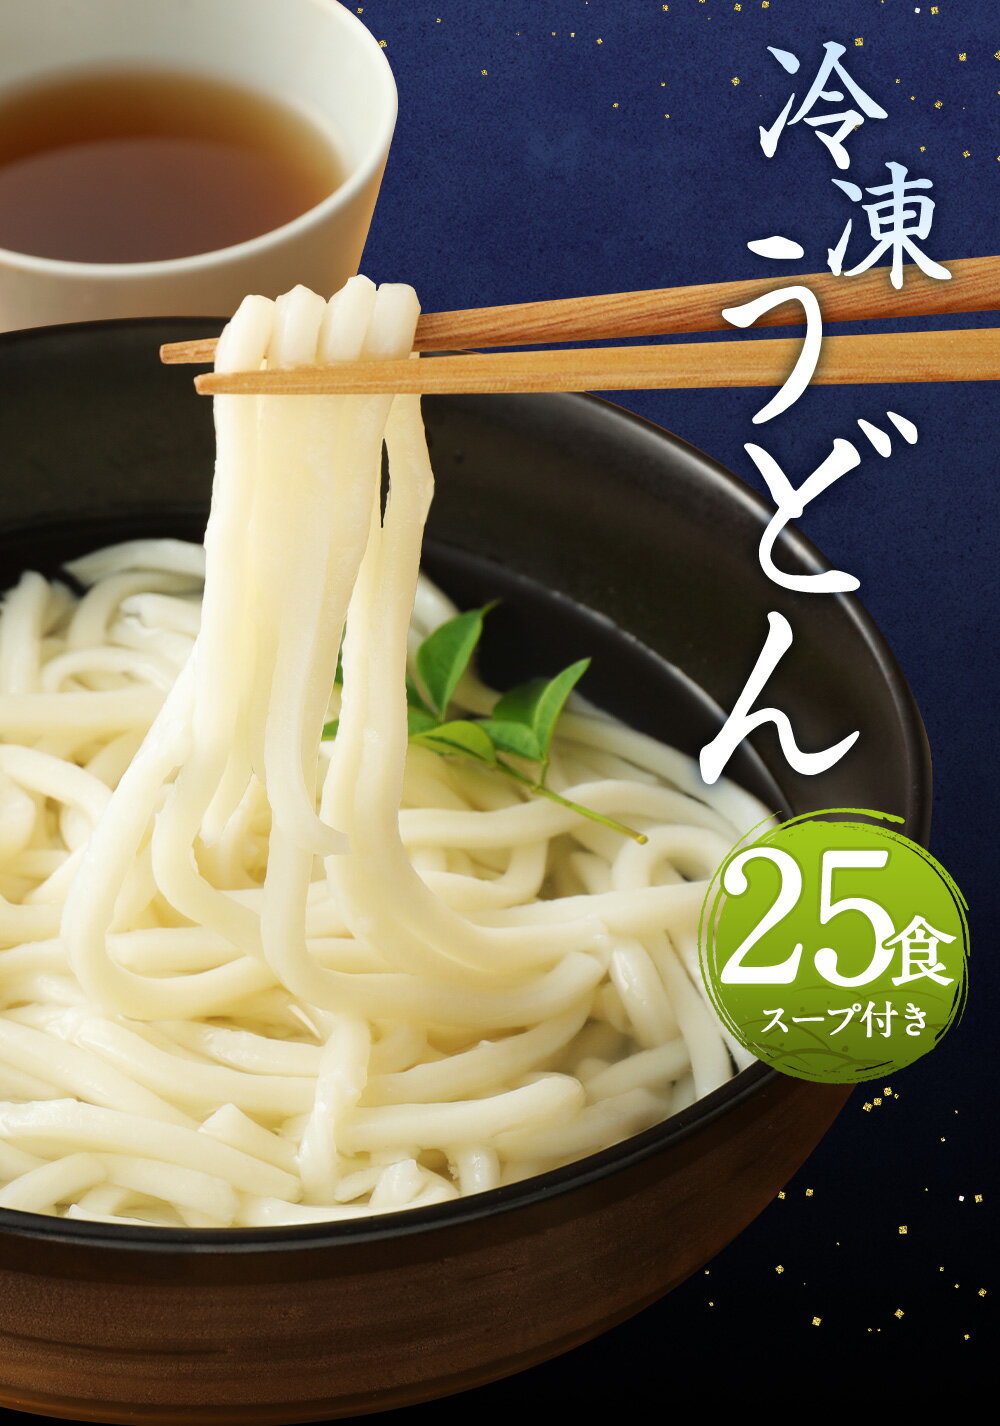 【ふるさと納税】熊本県産 冷凍うどん 25食 5kg スープ25食分 25人前 うどん 冷凍 茹でるだけ 麺 うどん麺 個包装 送料無料